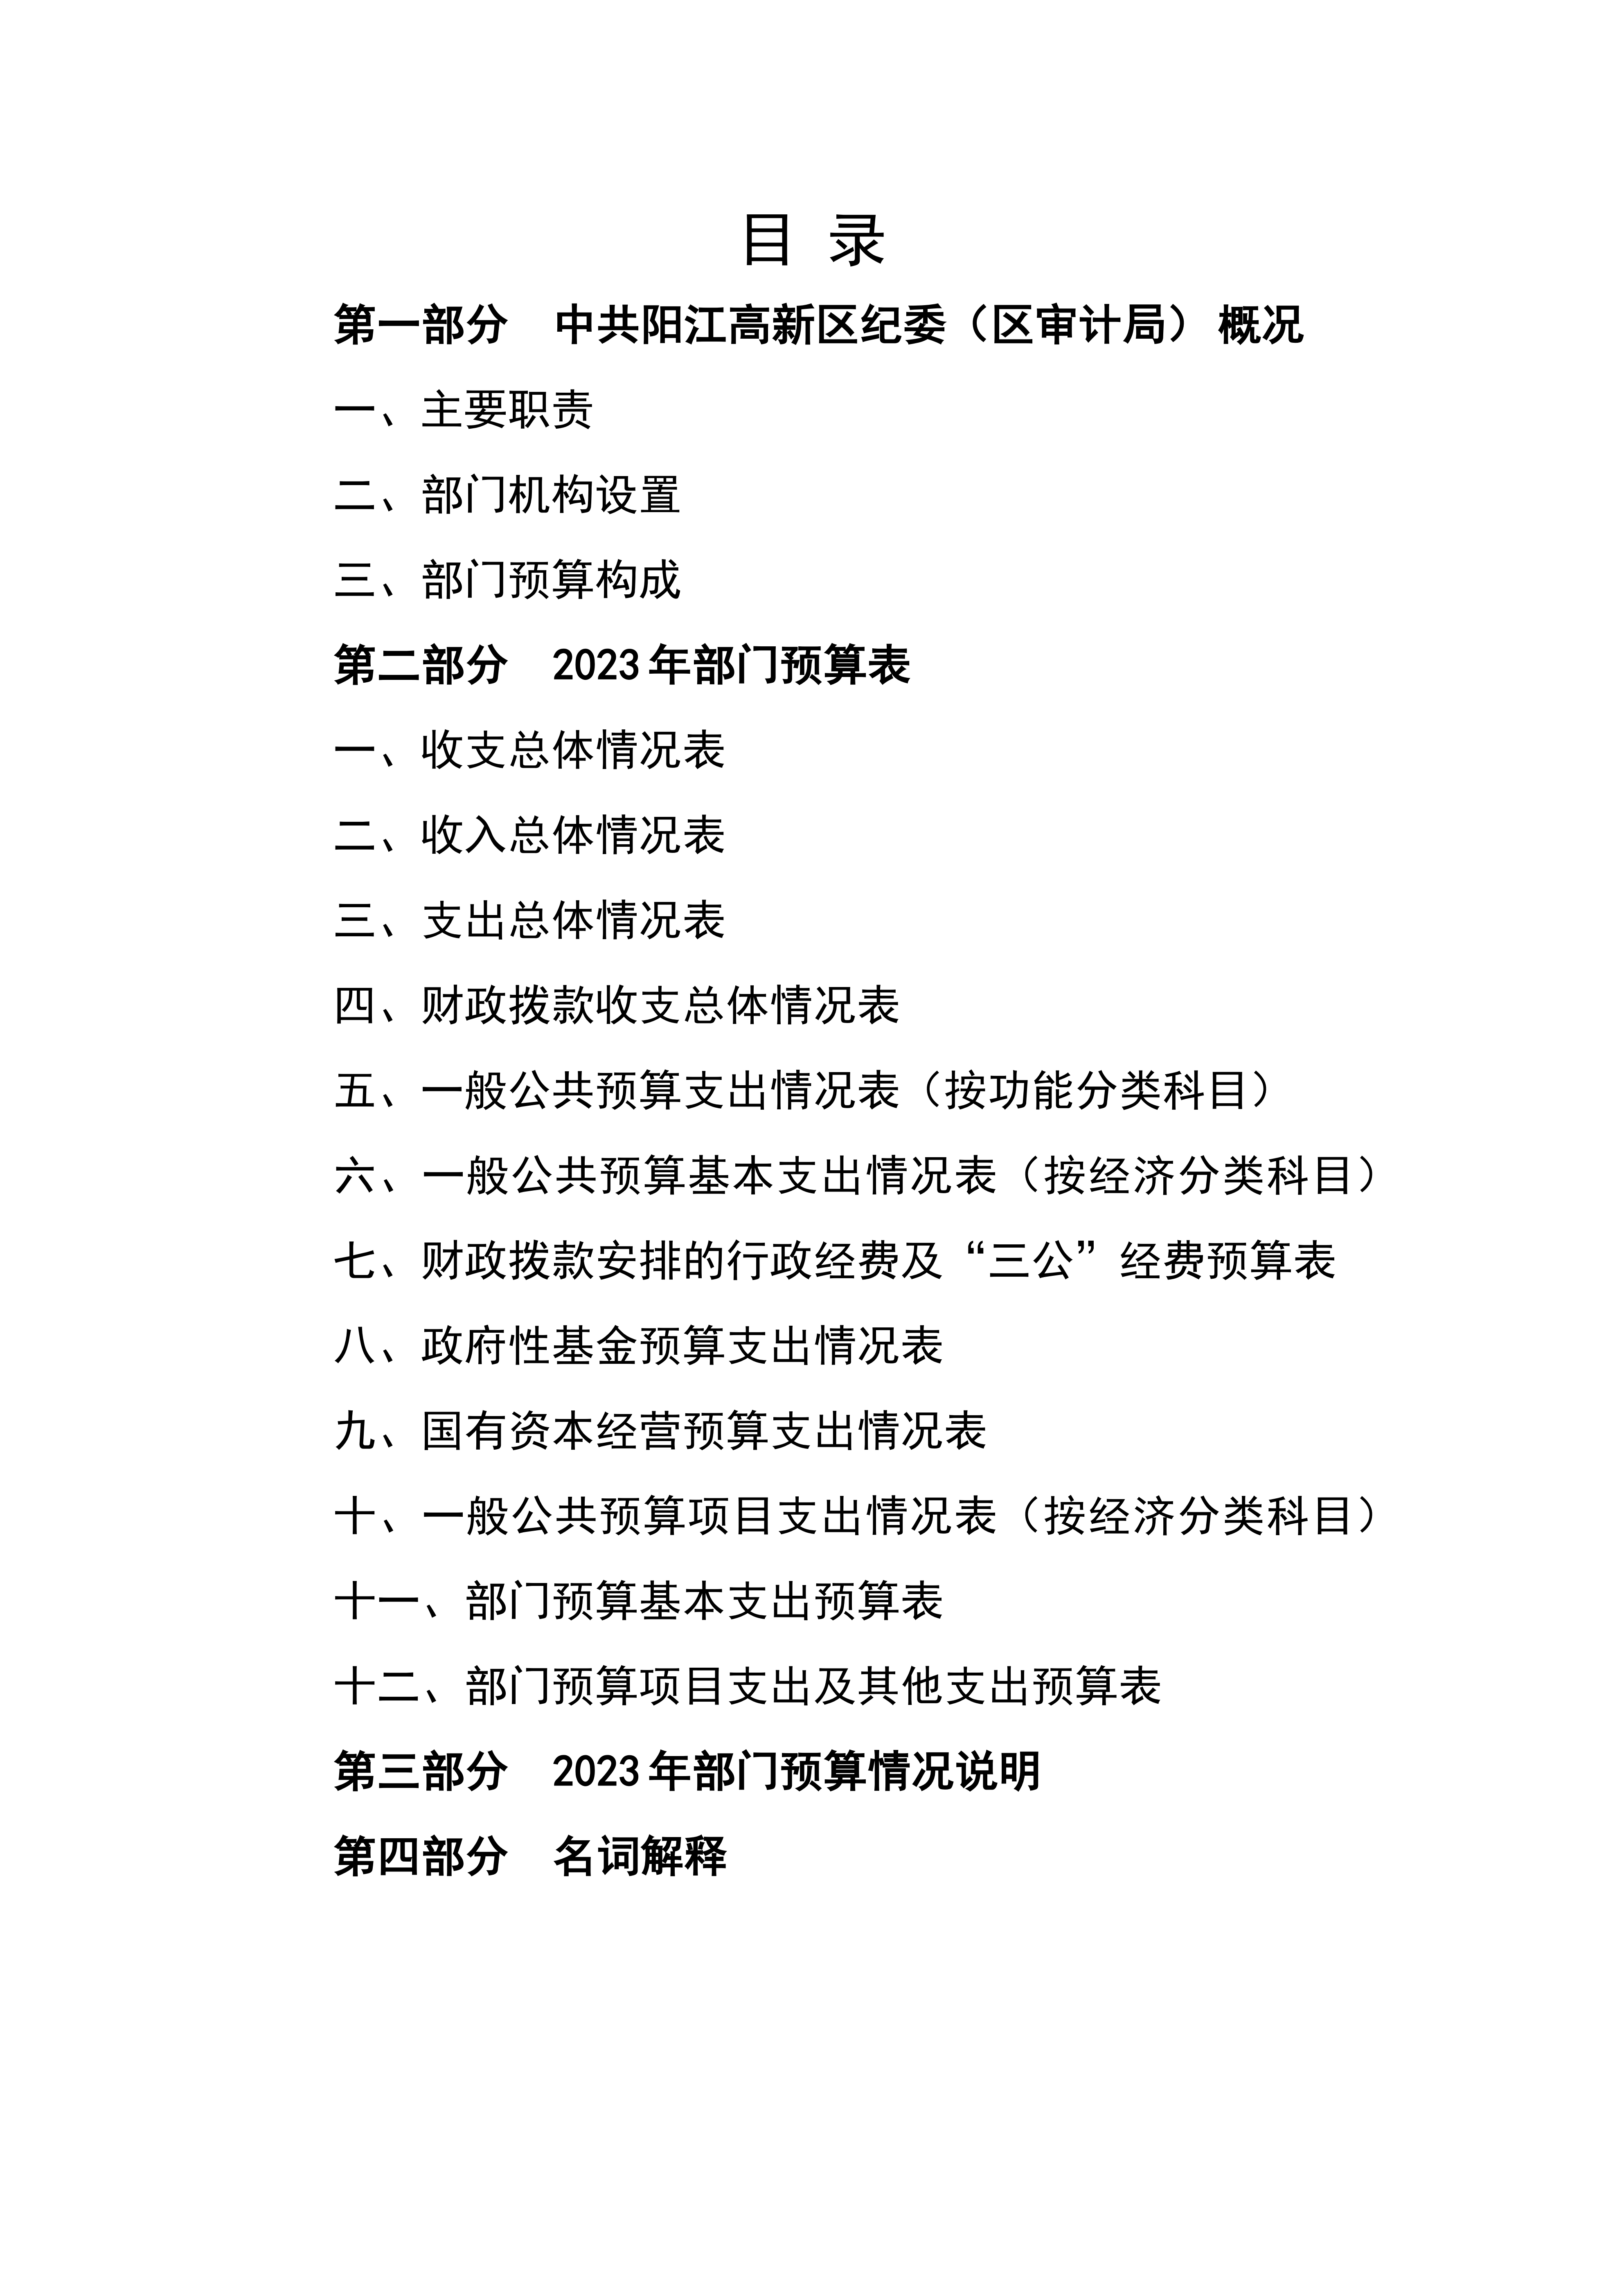 2023年中国共产党阳江高新技术产业开发区纪律检查委员会部门预算_01.png